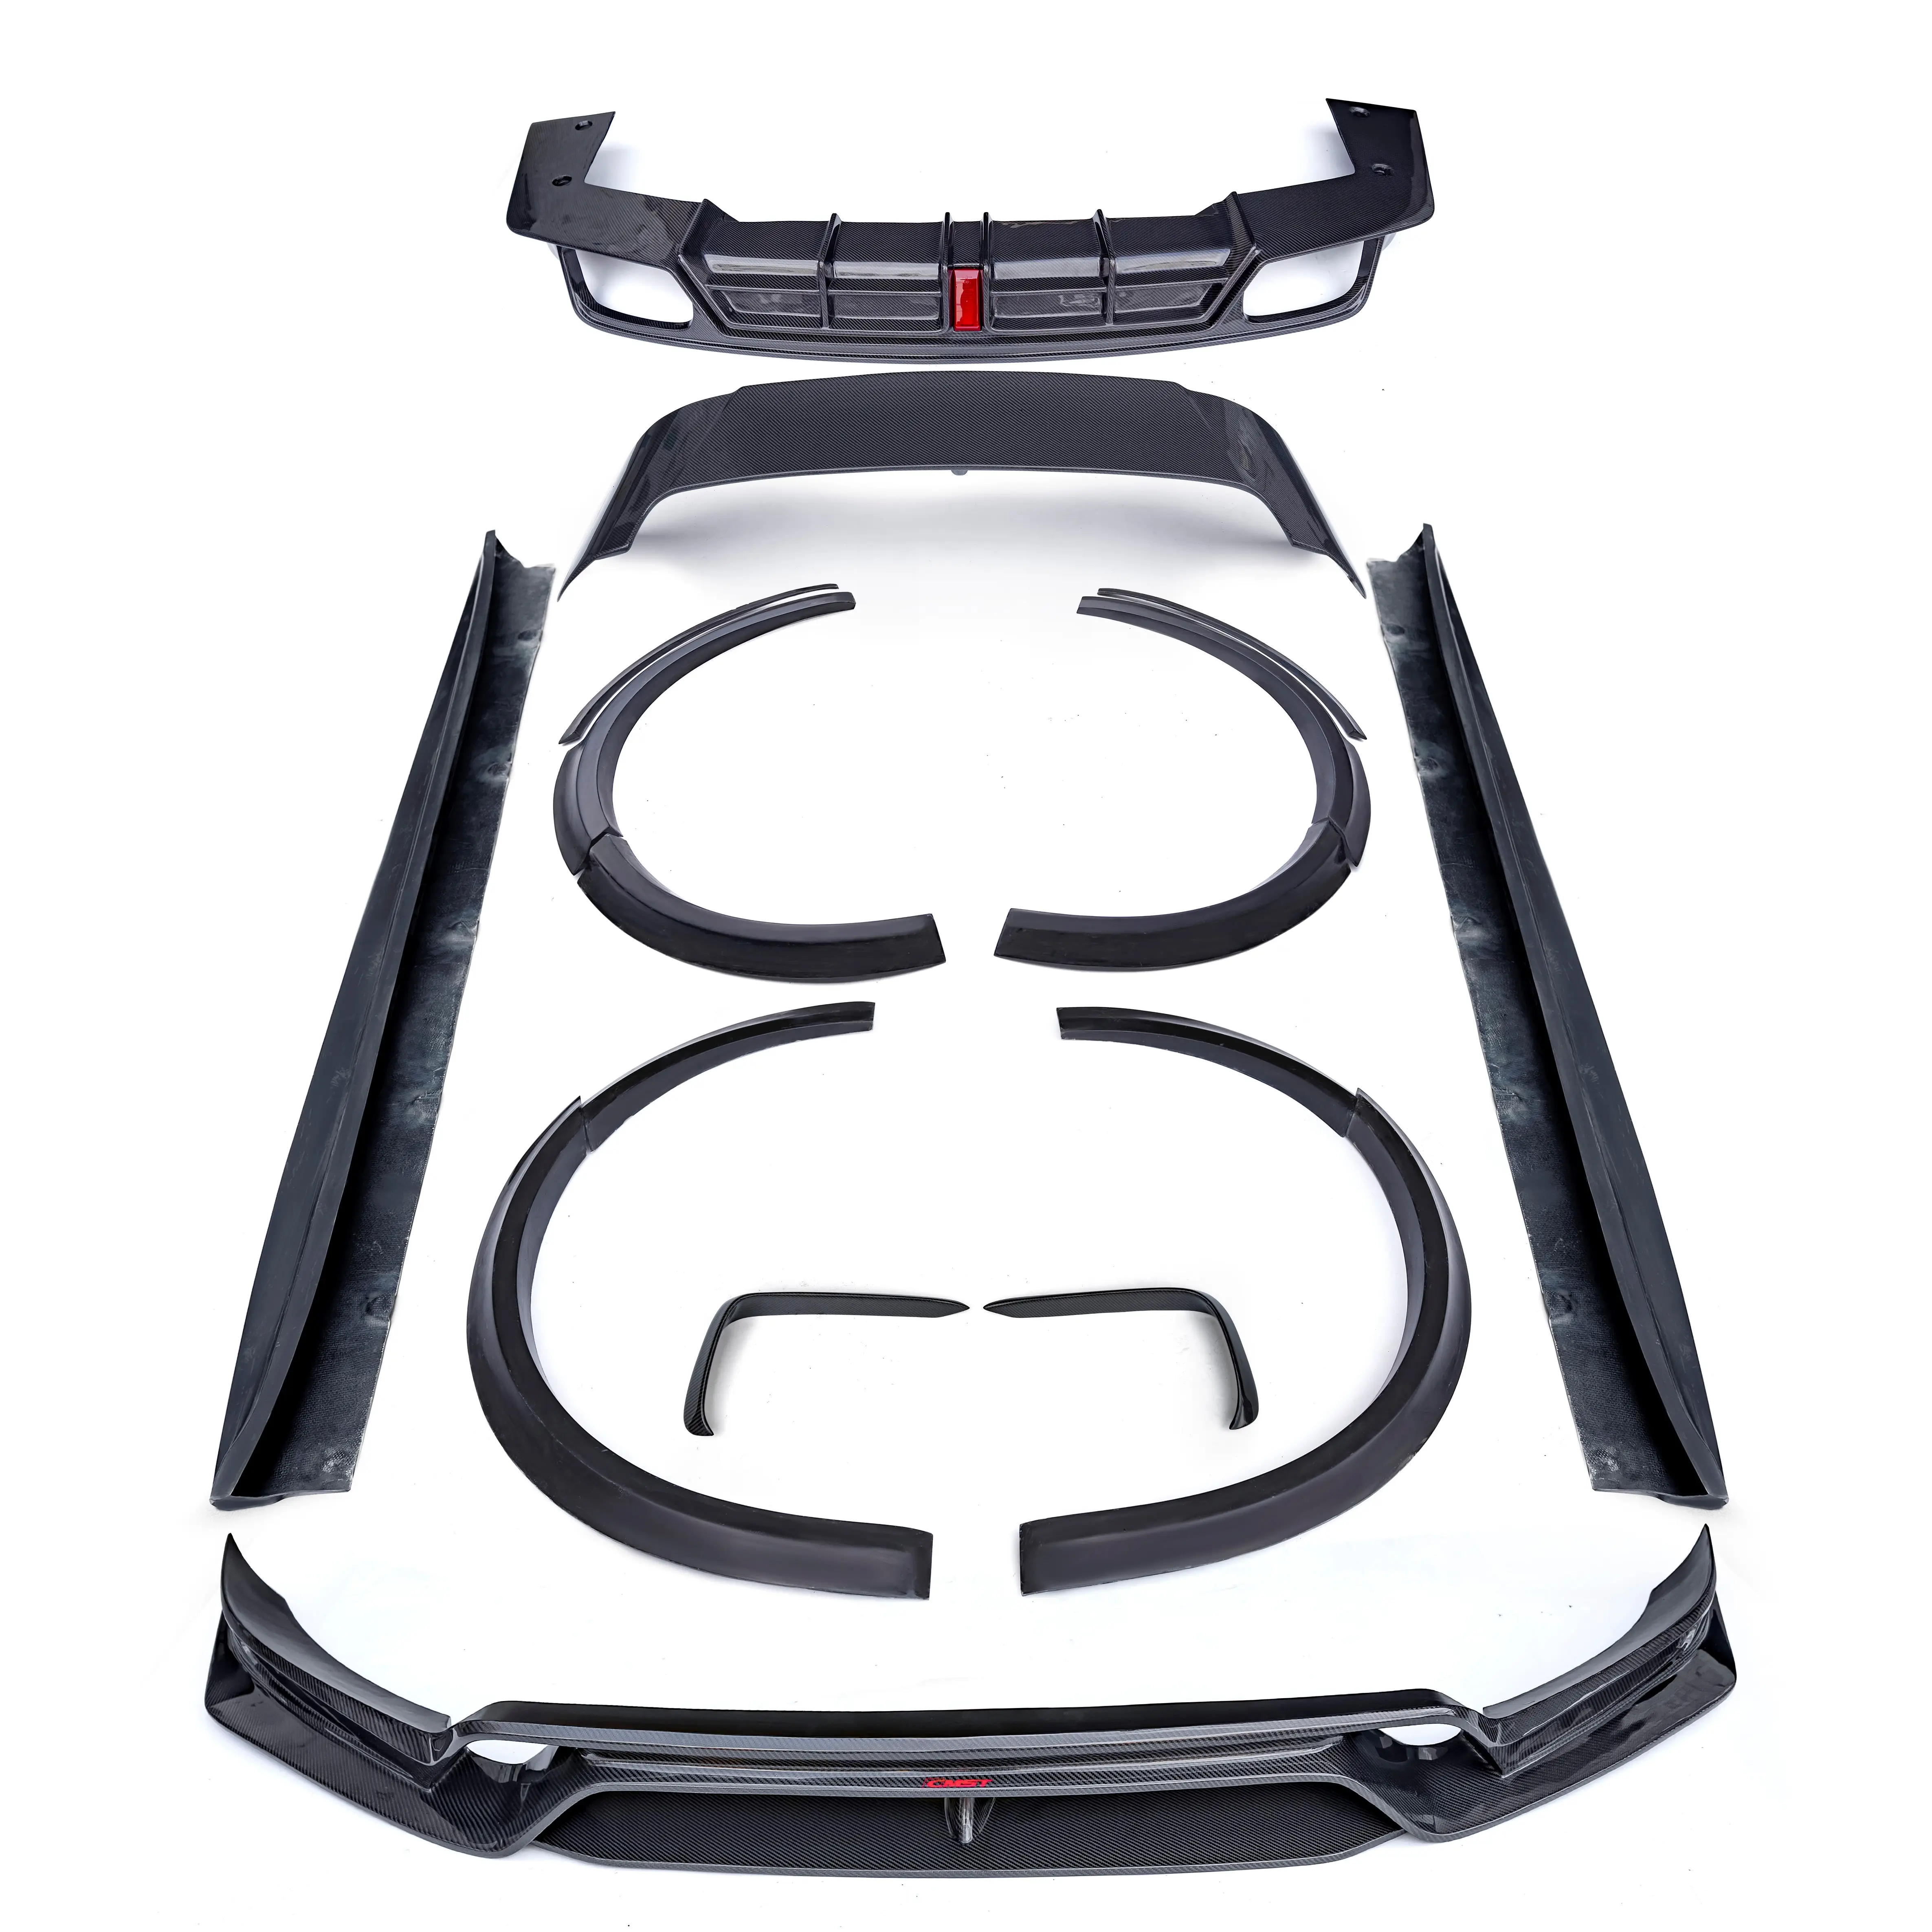 Diffusore posteriore a labbro anteriore in fibra di carbonio e minigonne laterali per Porsche cayenne 9Y0 cmst style parti in fibra di carbonio per new cayenne 9Y0